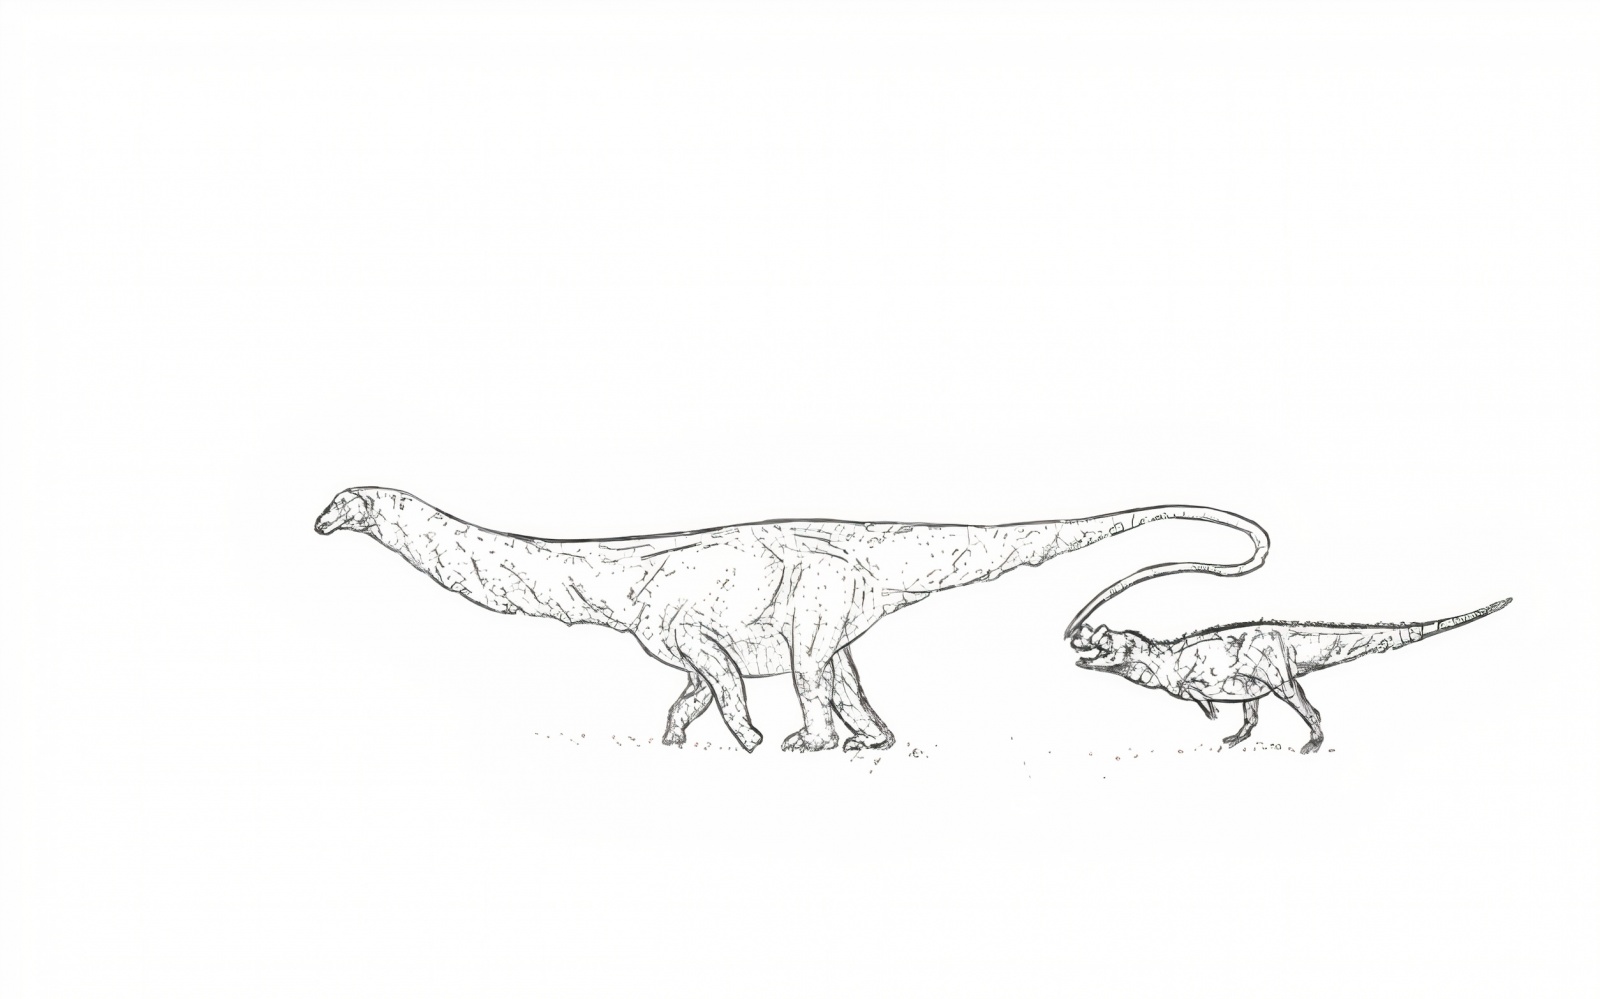 Апатозавр и Цератозавр в сравнении. Художник сообщества Фанерозой, Дмитрий Редискин